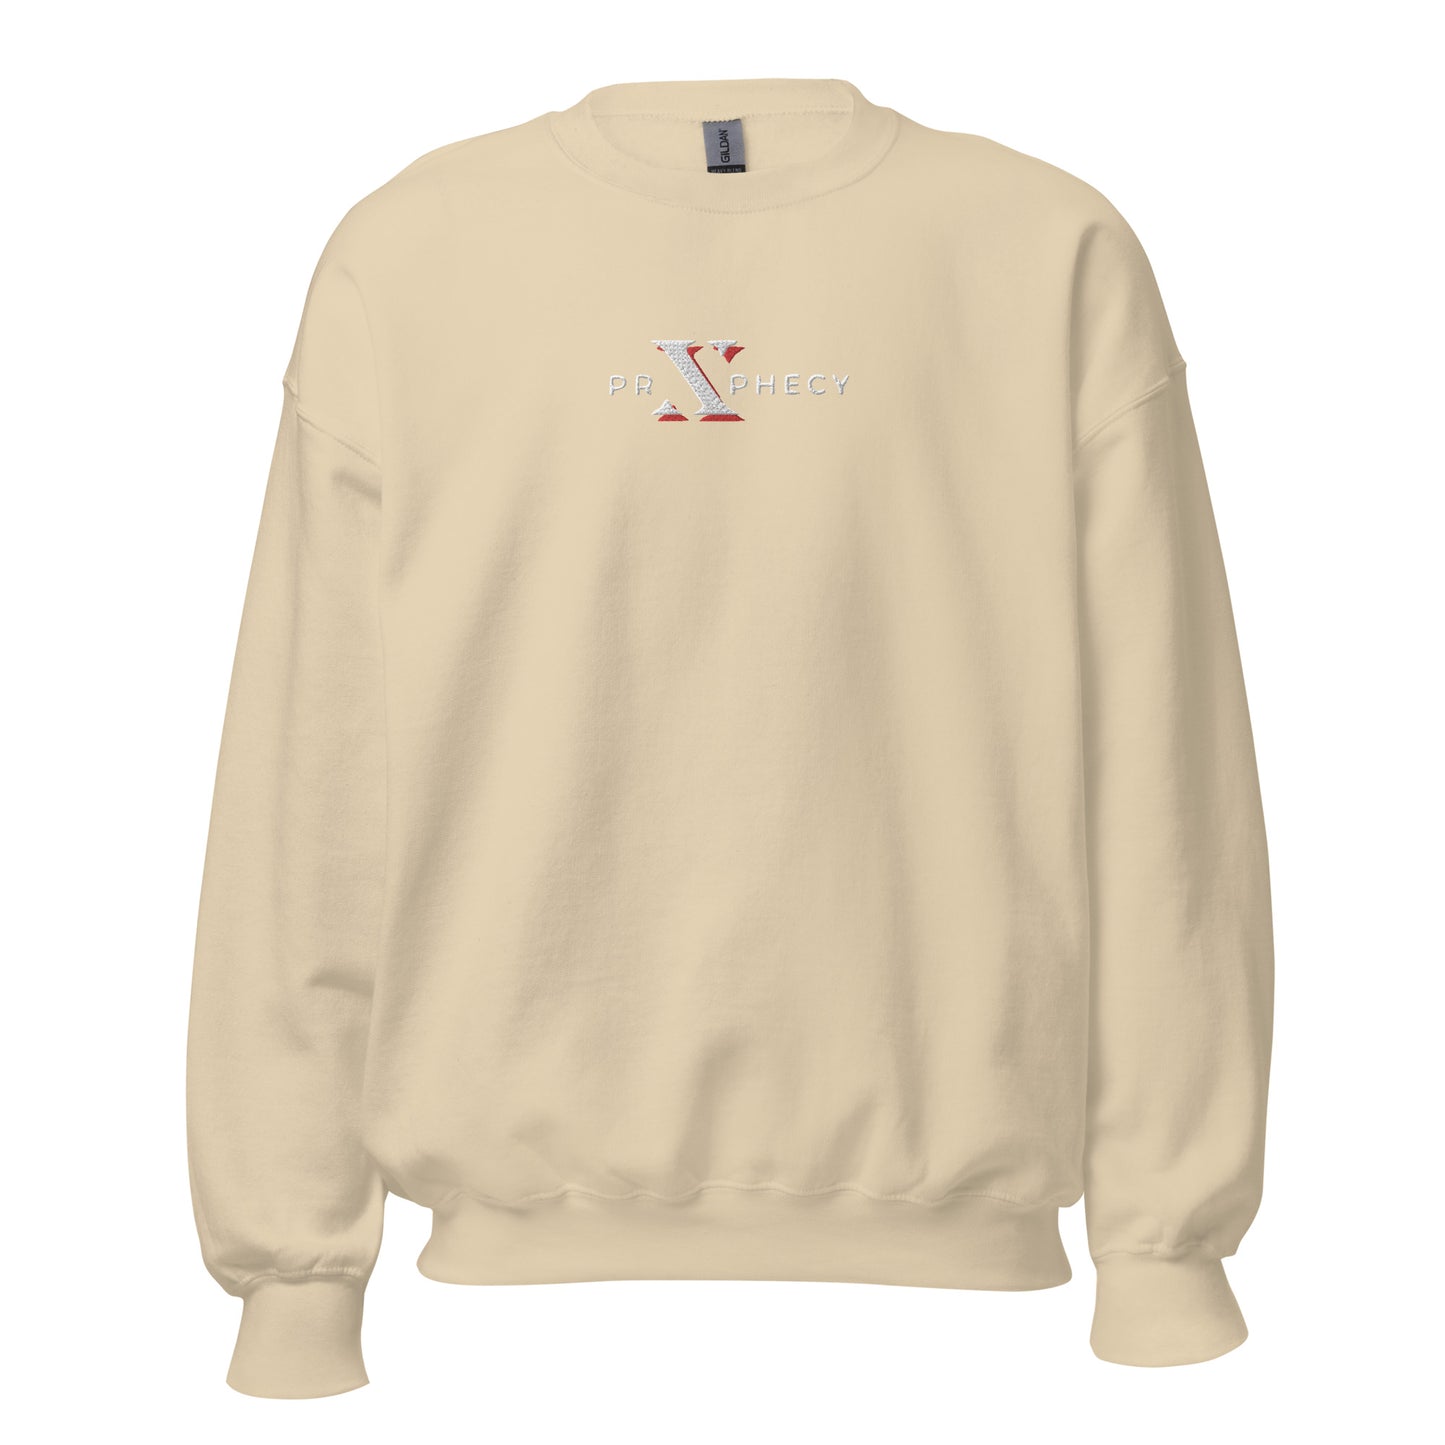 White "X" Prxphecy Unisex Sweatshirt